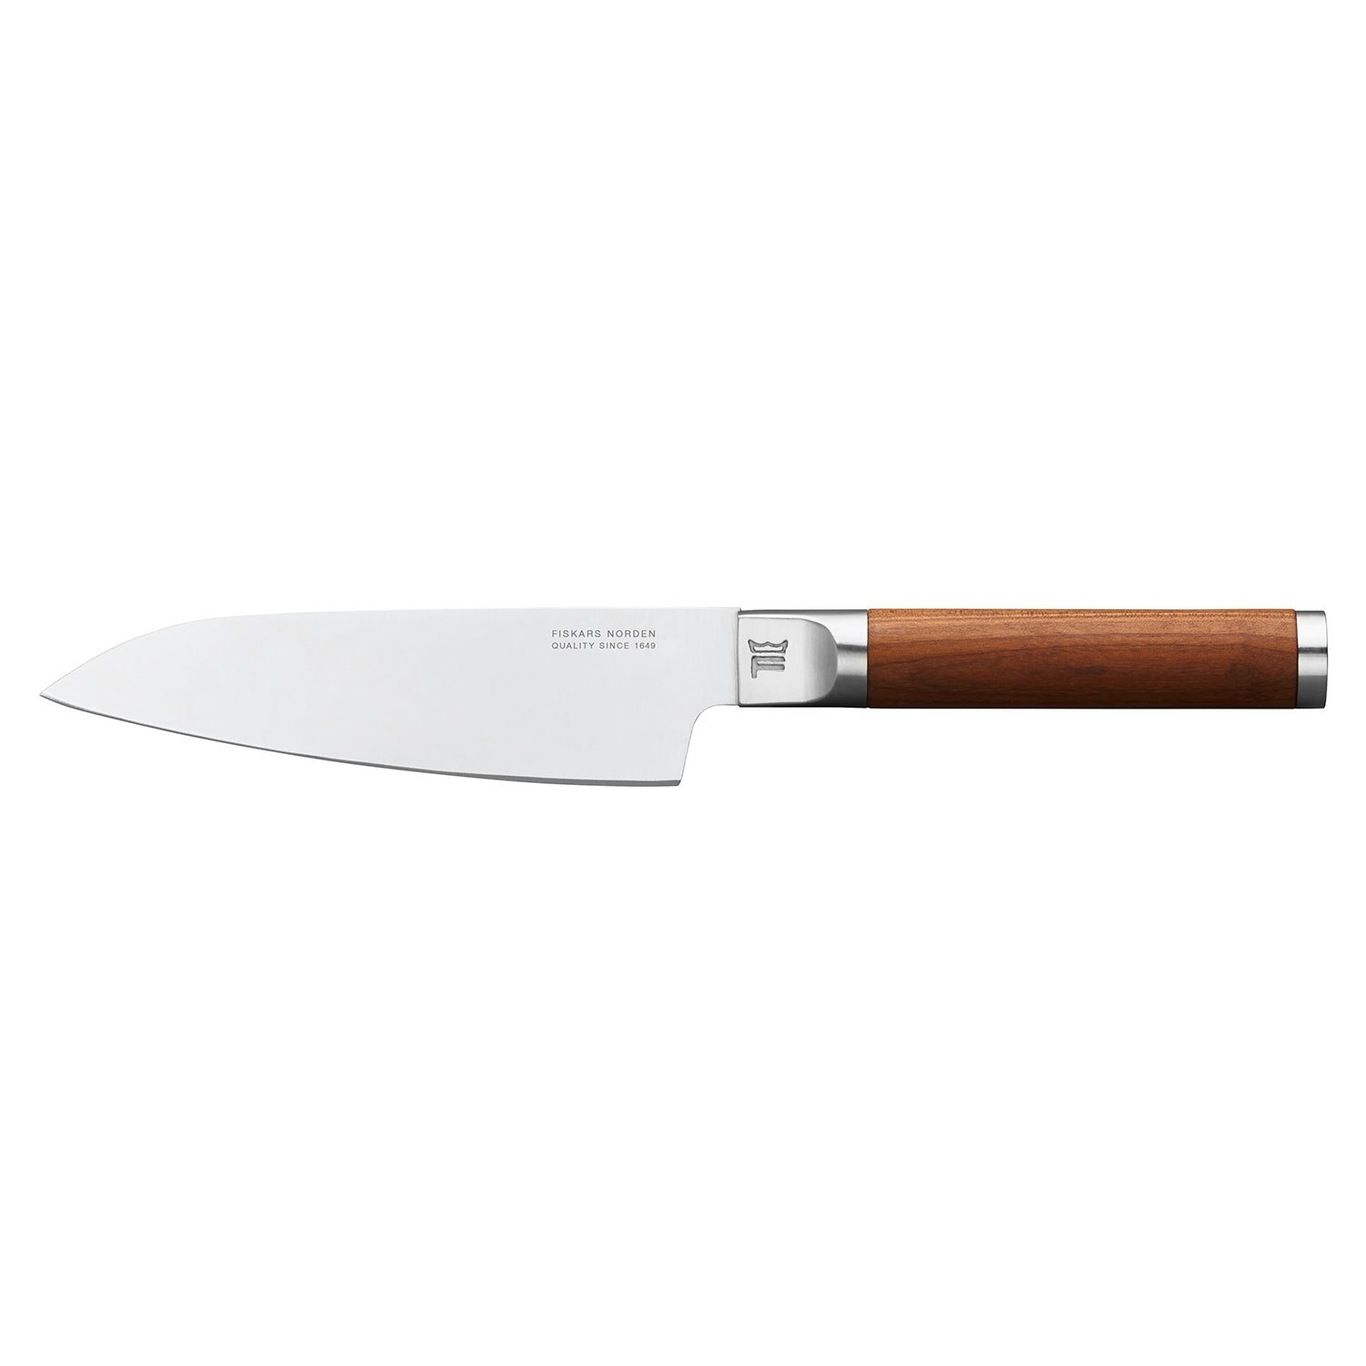 https://royaldesign.com/image/2/fiskars-norden-chefs-knife-0?w=800&quality=80